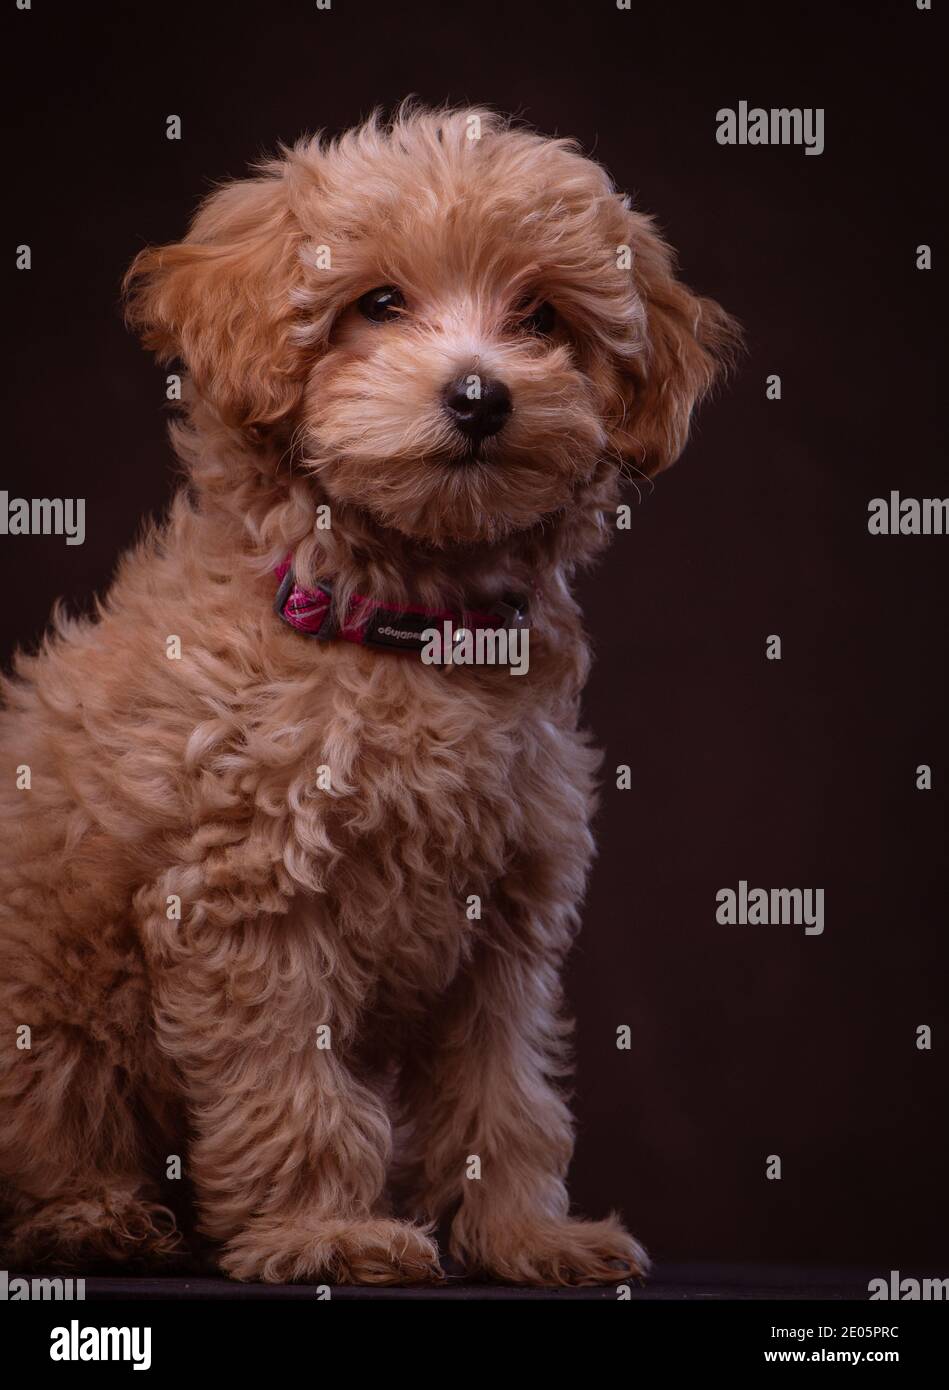 Süßeste Welpen Stockfotos und -bilder Kaufen - Alamy